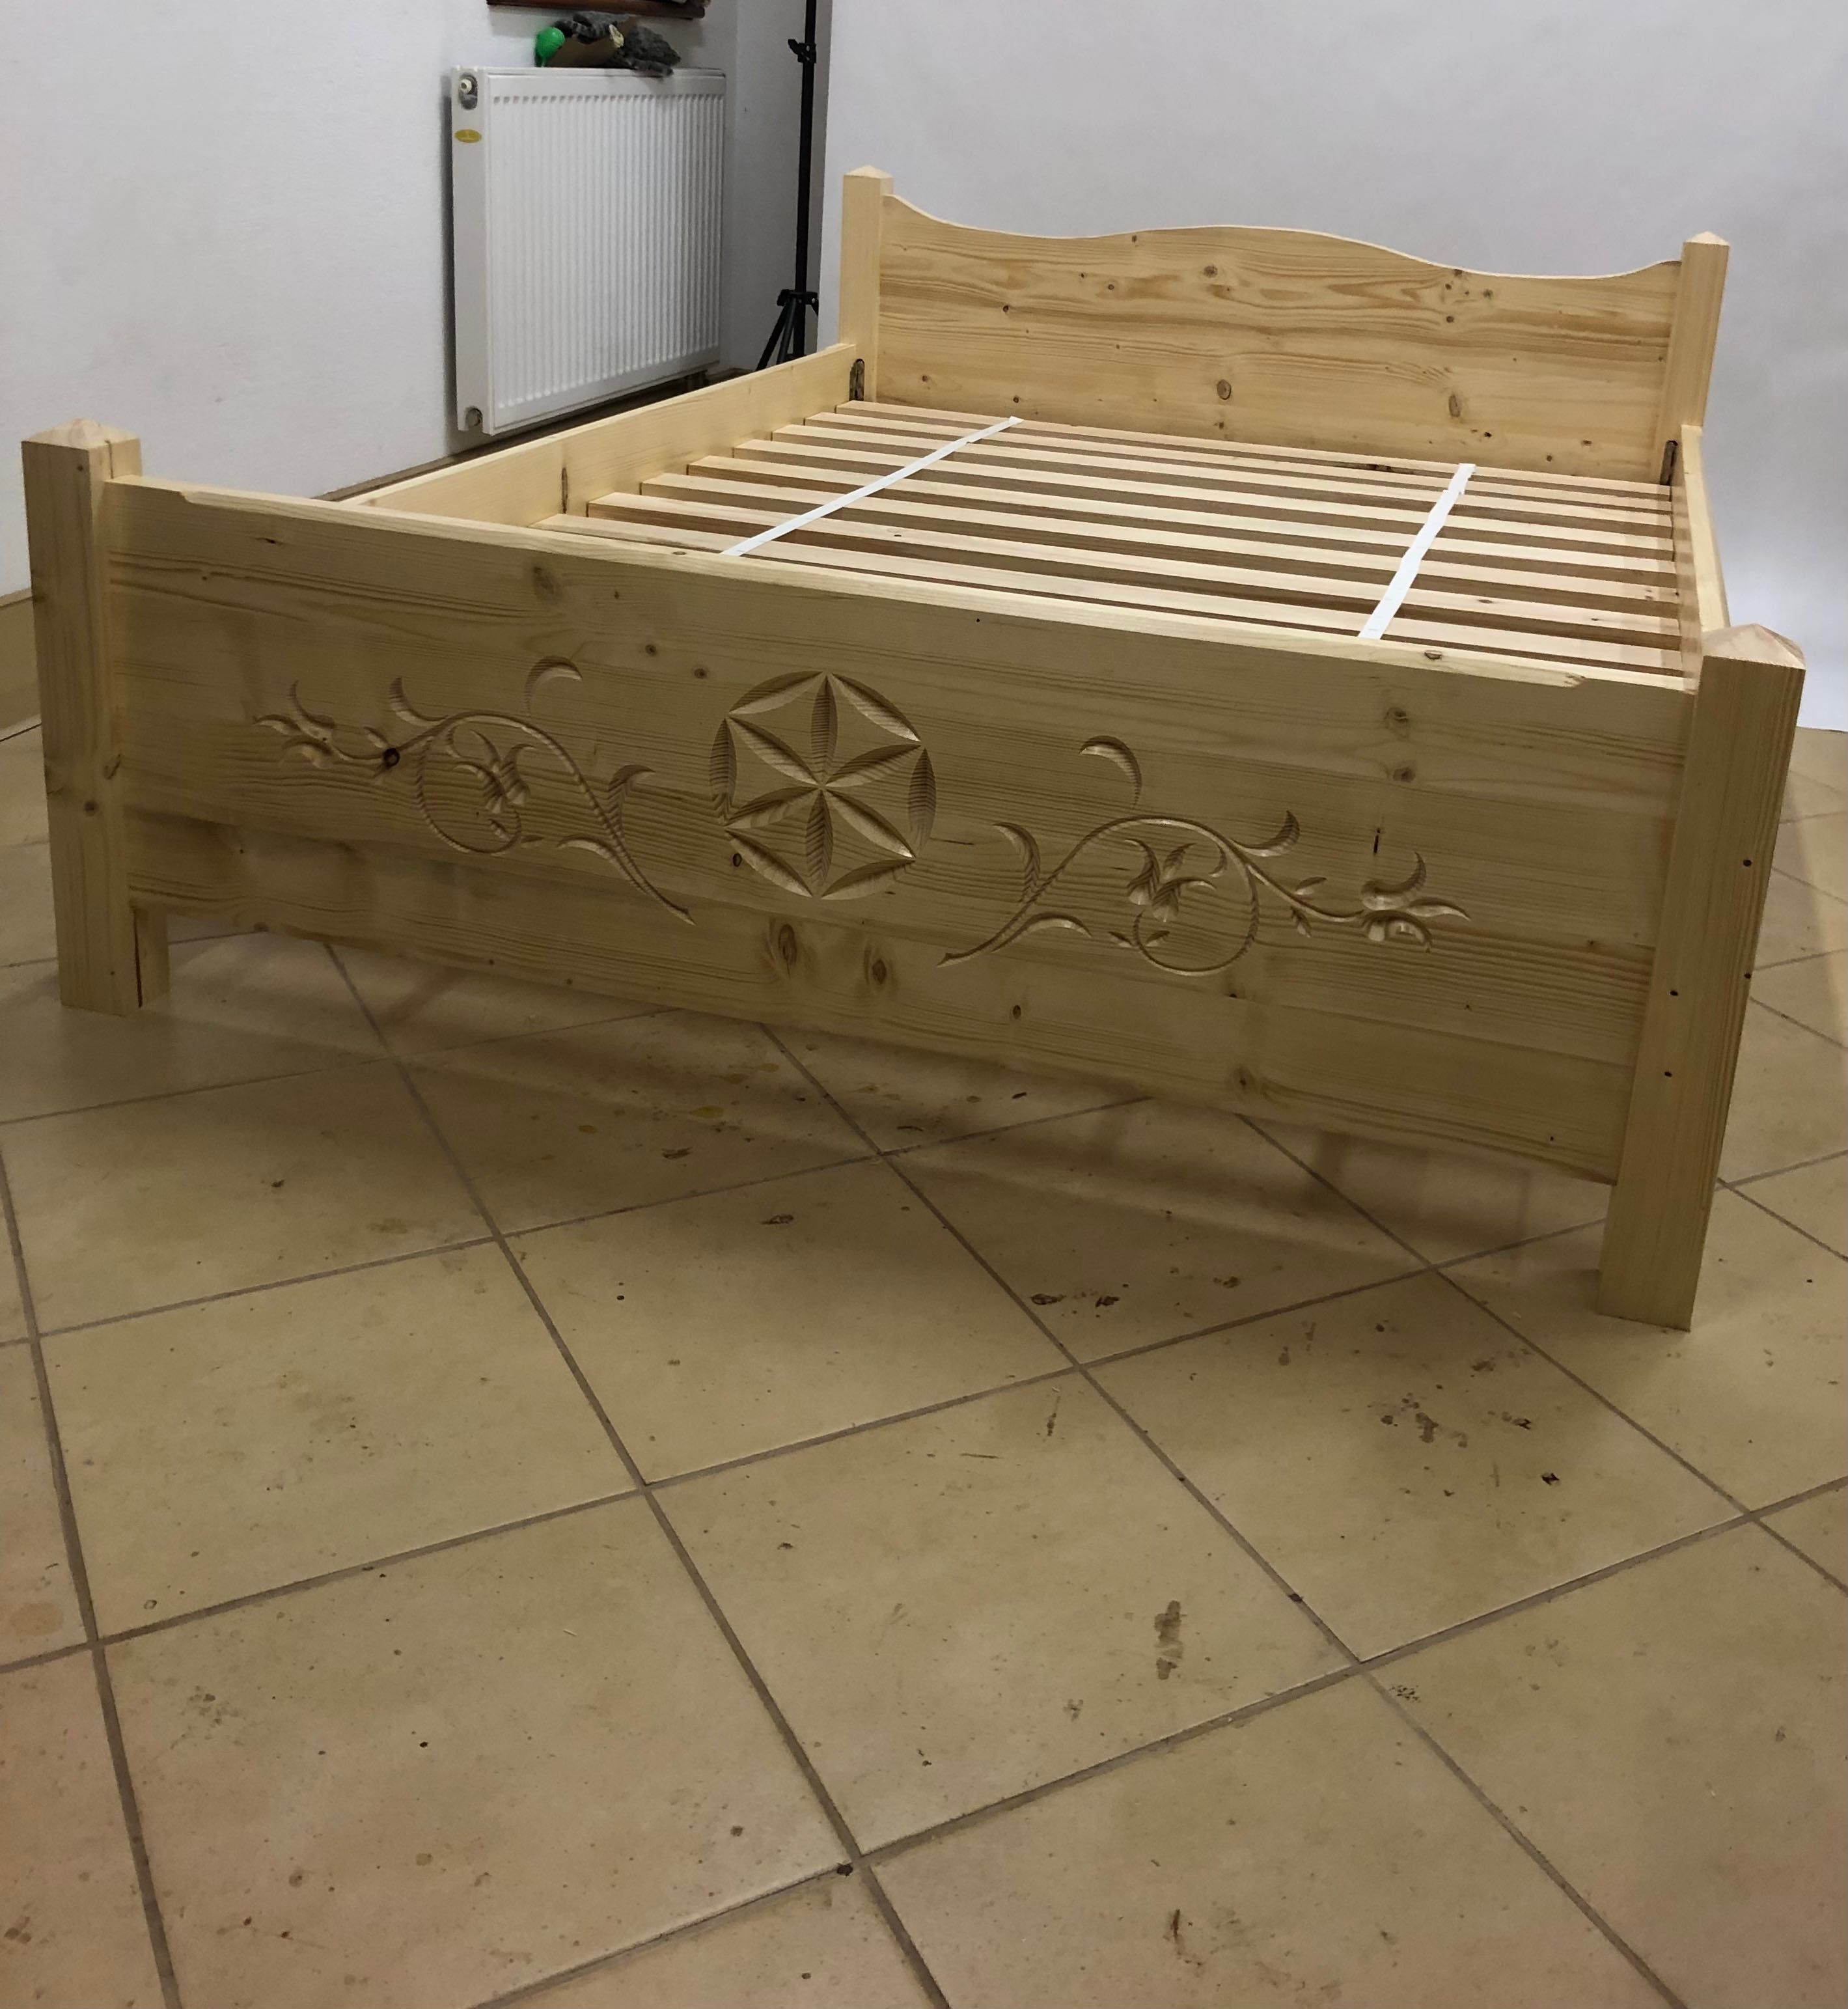 Łóżko drewniane w stylu góralskim